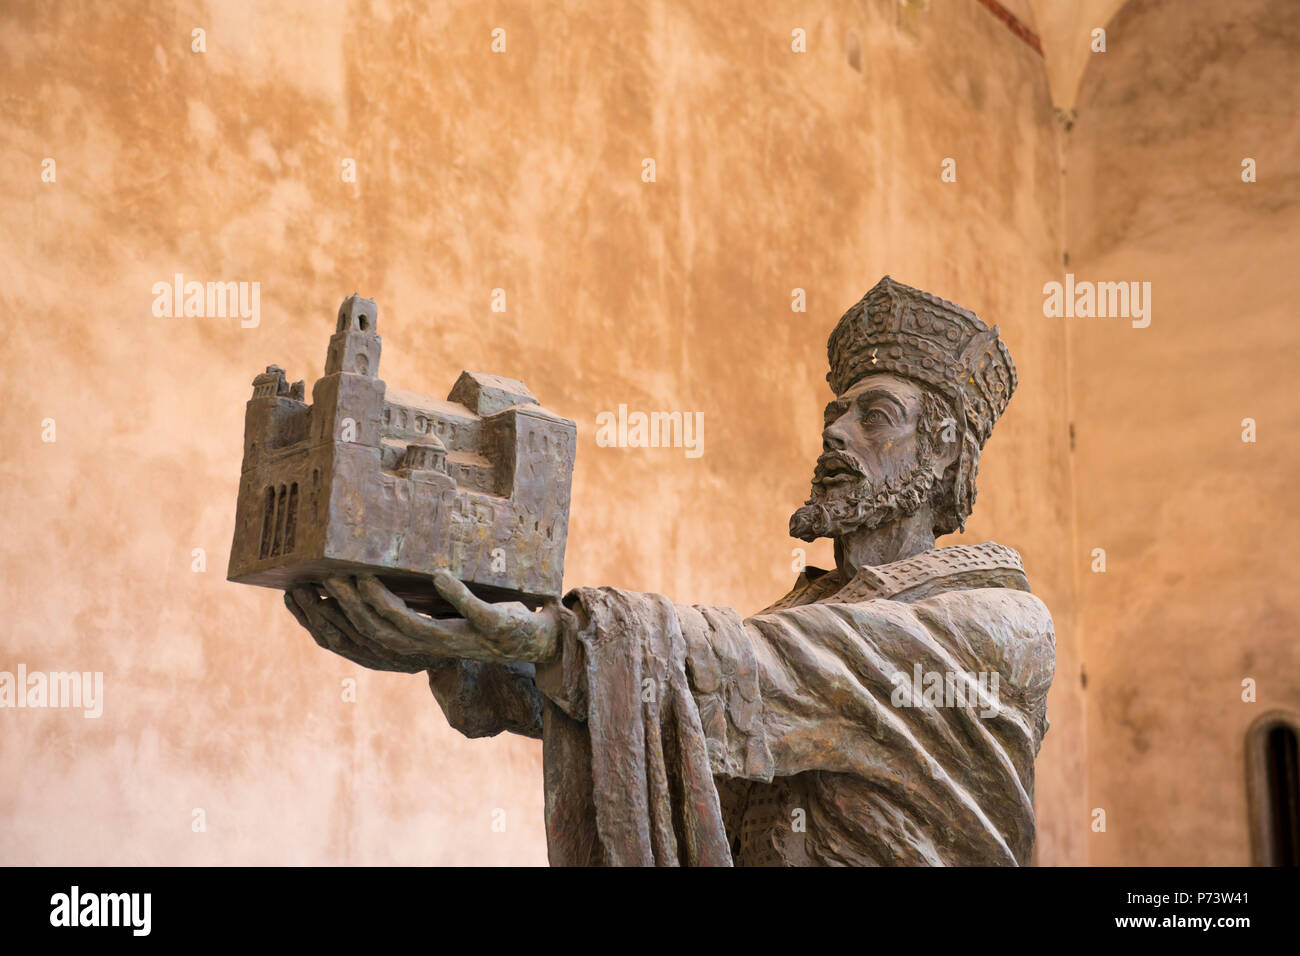 Italia Sicilia Monreale arabo-normanna cattedrale in stile costruito 1172 - 1189 scultura in bronzo statua di Re Guglielmo II offre dedicando Duomo alla Vergine Maria Foto Stock